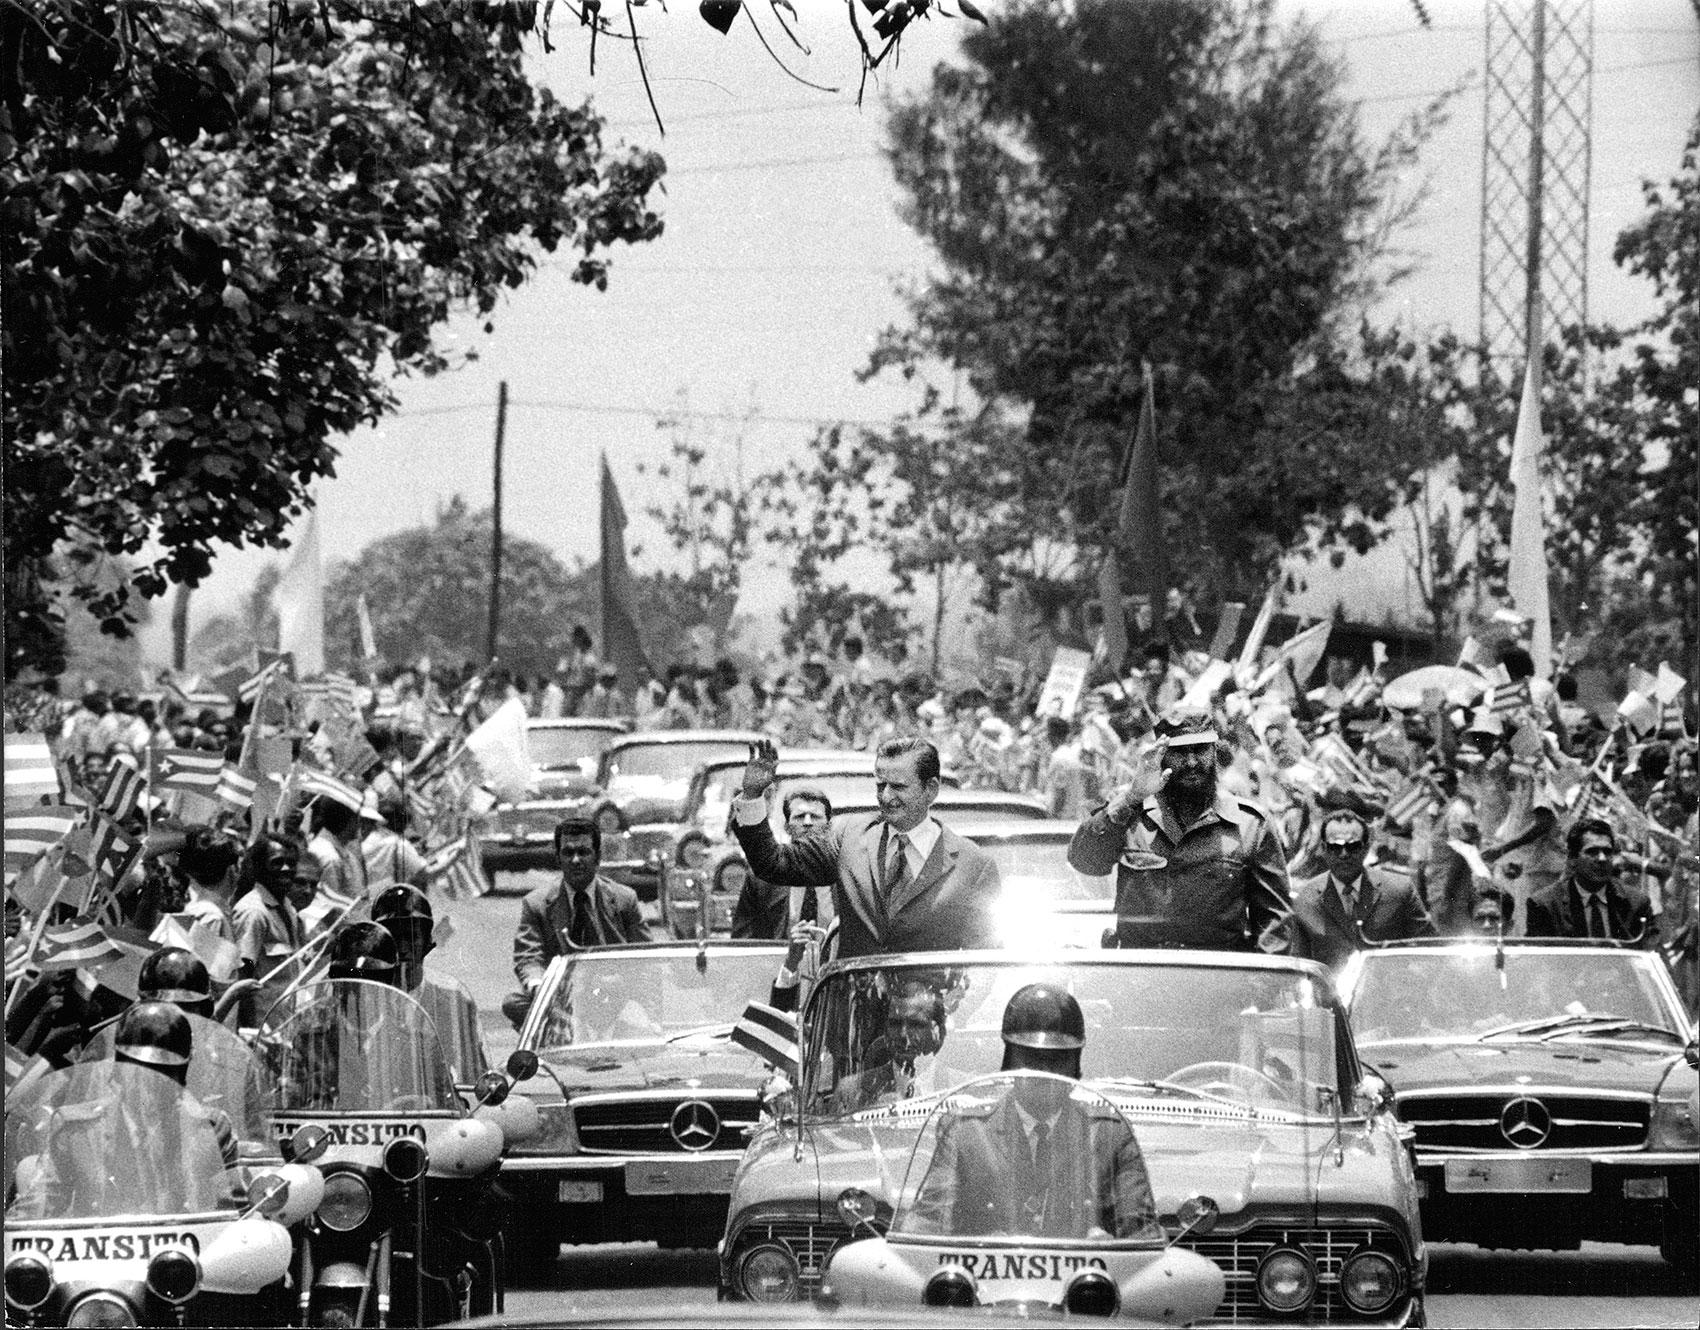 Palme och Castro åker bilkortege genom Havanna under besöket 1975.